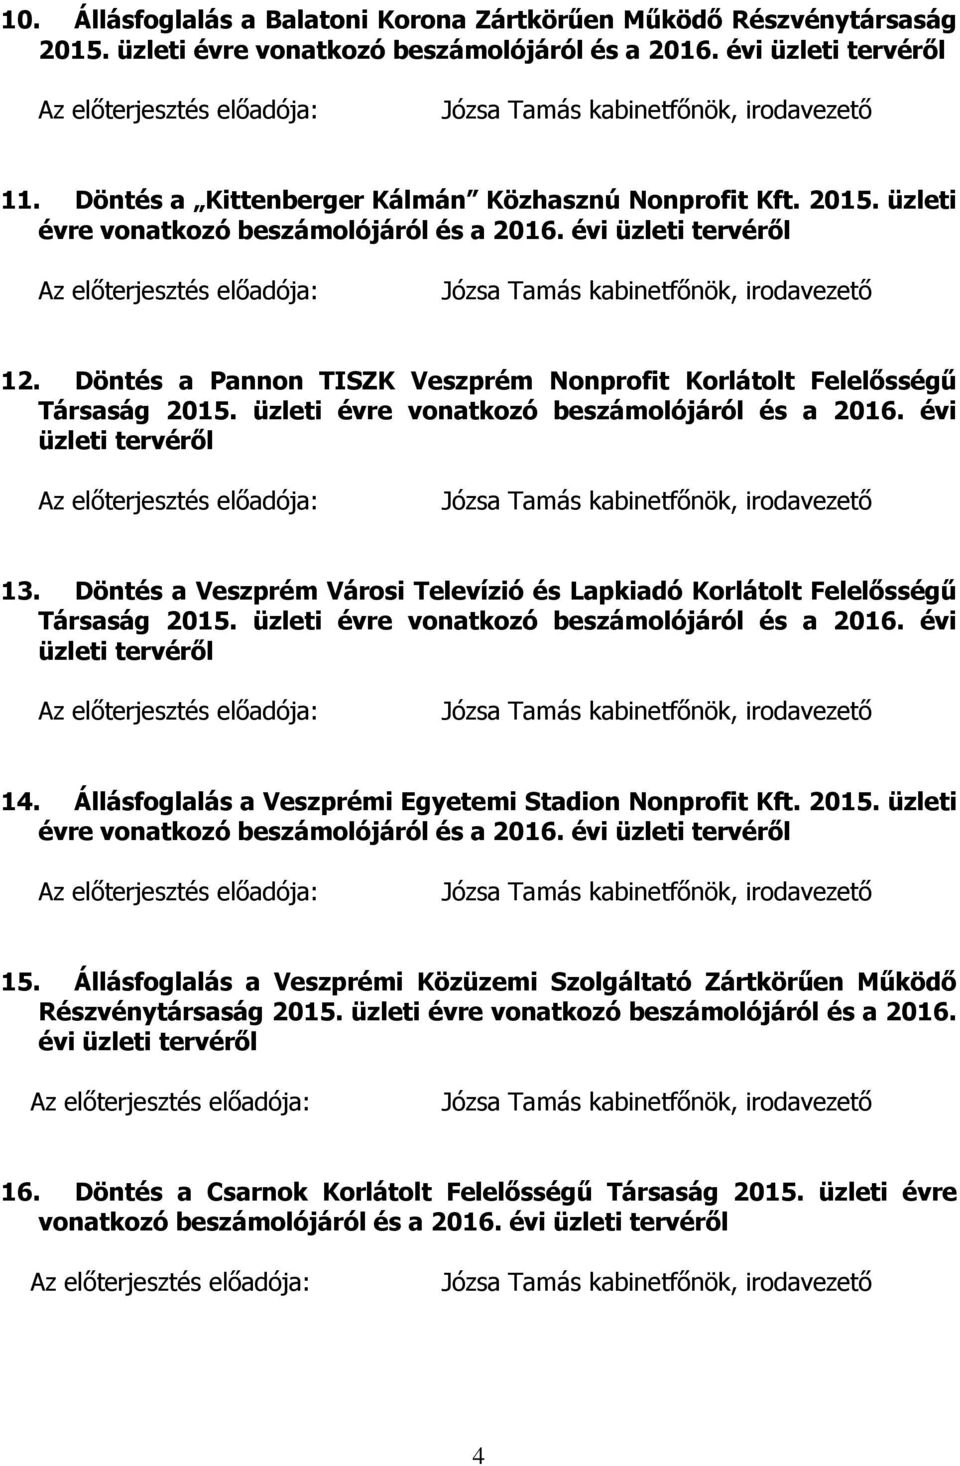 Döntés a Pannon TISZK Veszprém Nonprofit Korlátolt Felelősségű Társaság 2015. üzleti évre vonatkozó beszámolójáról és a 2016. évi üzleti tervéről 13.